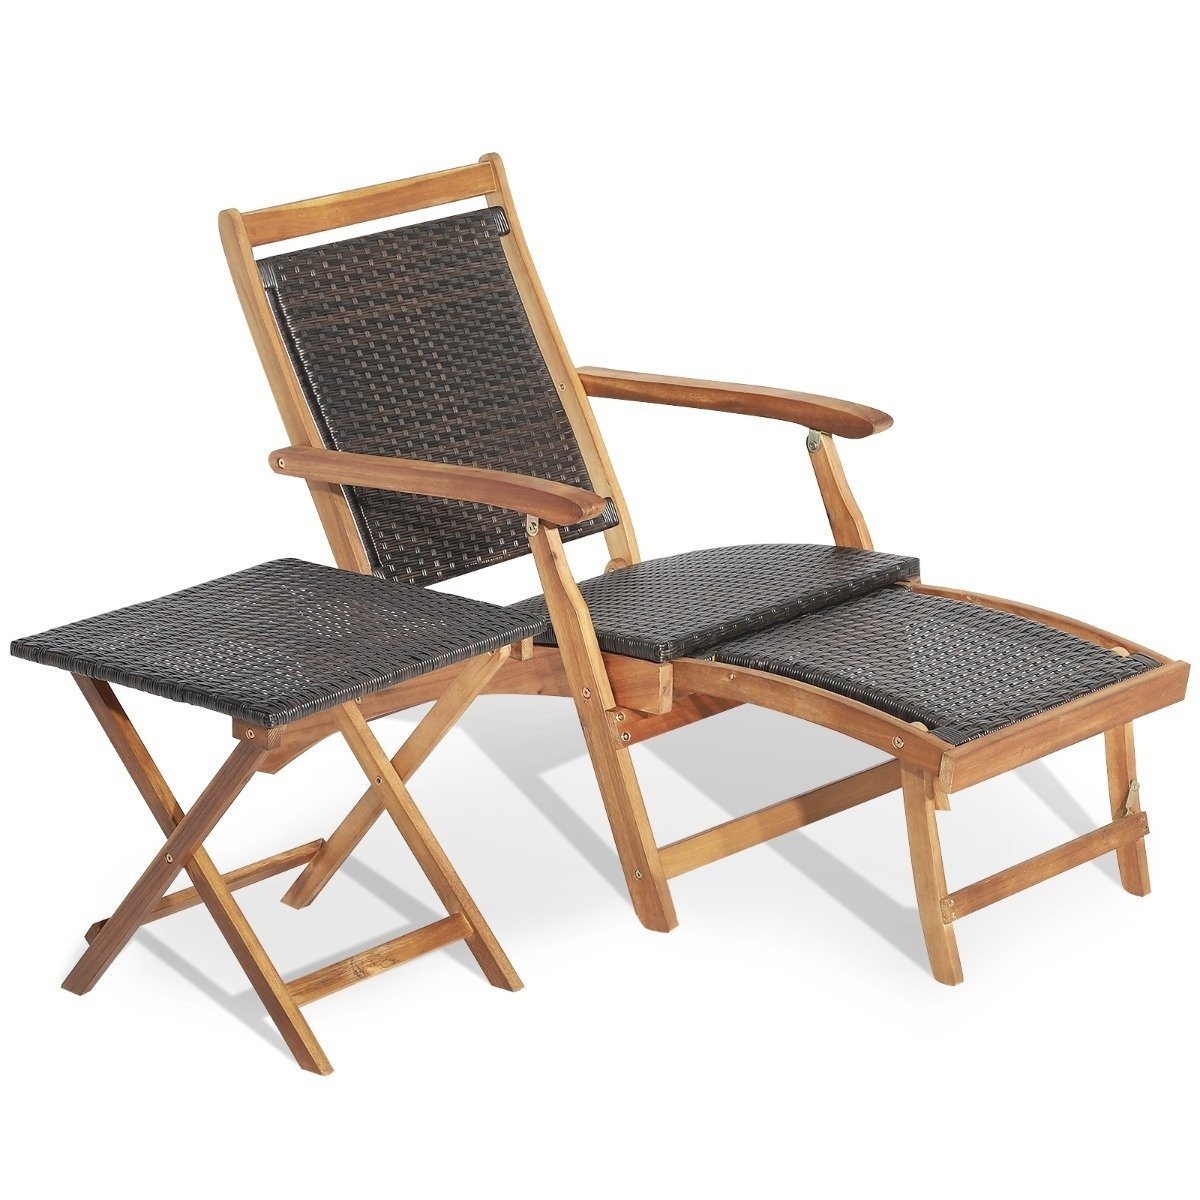 Mit Braun günstig Kaufen-Coast 2-teiliges Gartenmöbel-Set bestehend aus Stuhl mit ausziehbarer Fußstütze und Beistelltisch aus Akazienholz Braun. Coast 2-teiliges Gartenmöbel-Set bestehend aus Stuhl mit ausziehbarer Fußstütze und Beistelltisch aus Ak